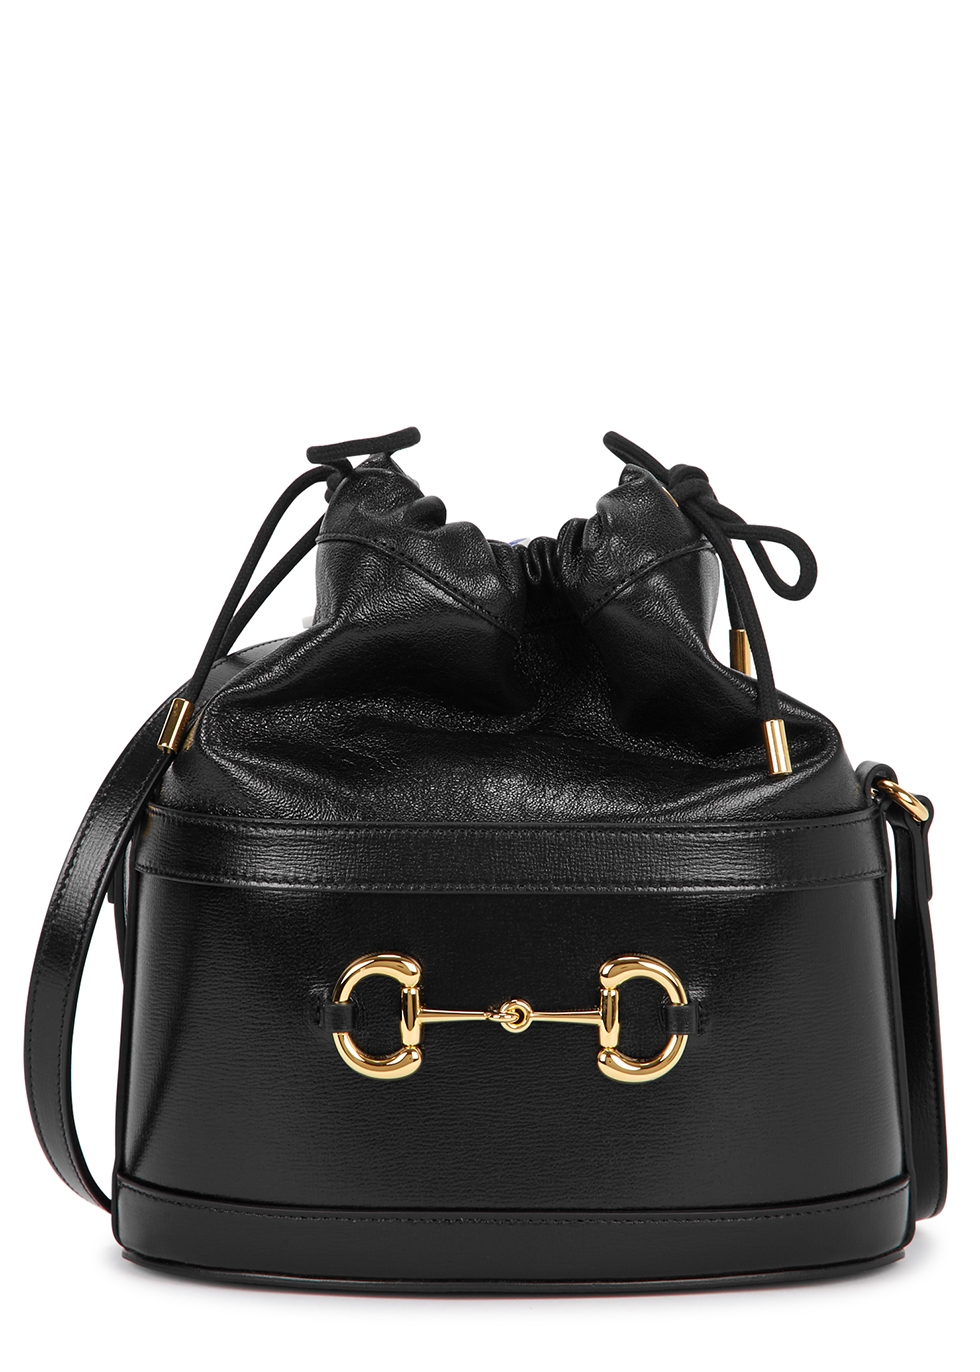 Gucci Morsetto small black leather bucket bag - Harvey Nichols